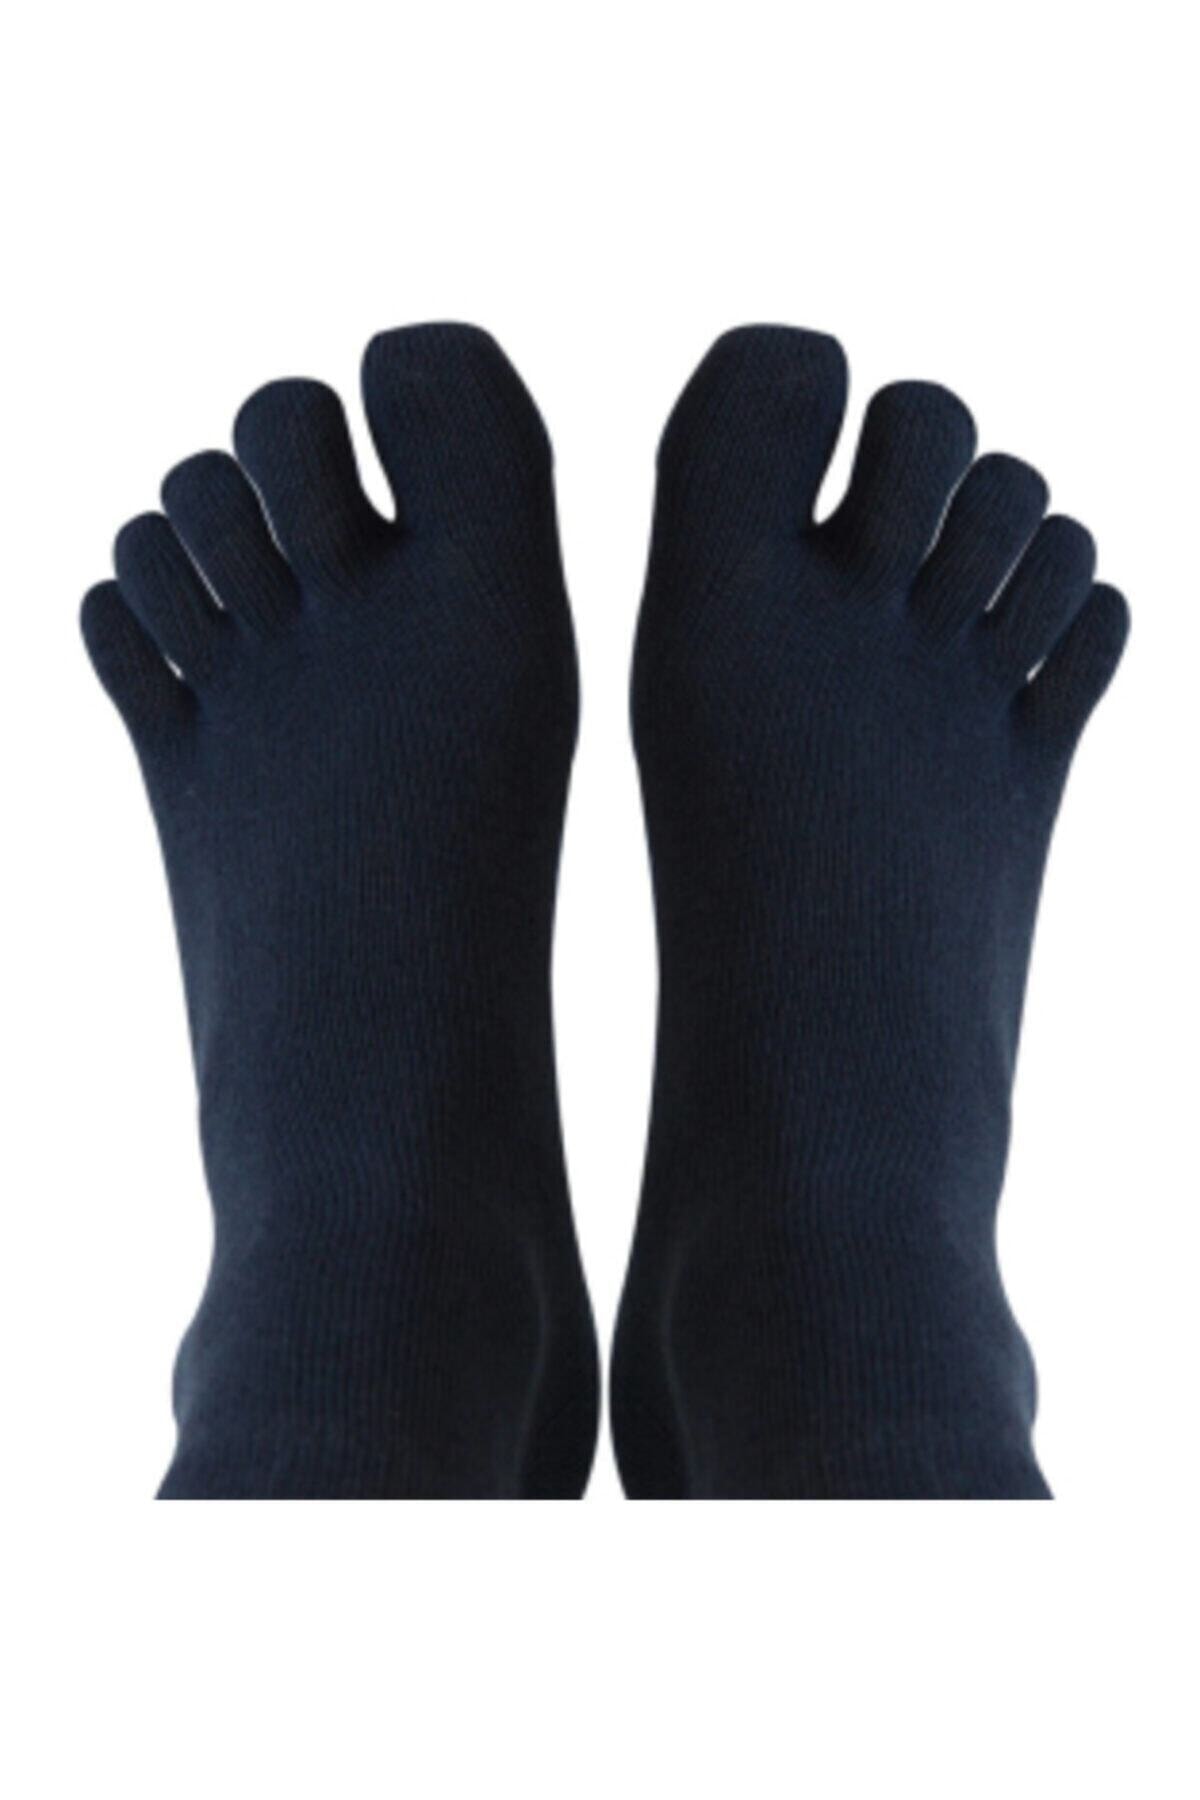 Daren Parmak Çorap 6 Adet Mantar Çorabı 37-44 Numara Siyah Bambu